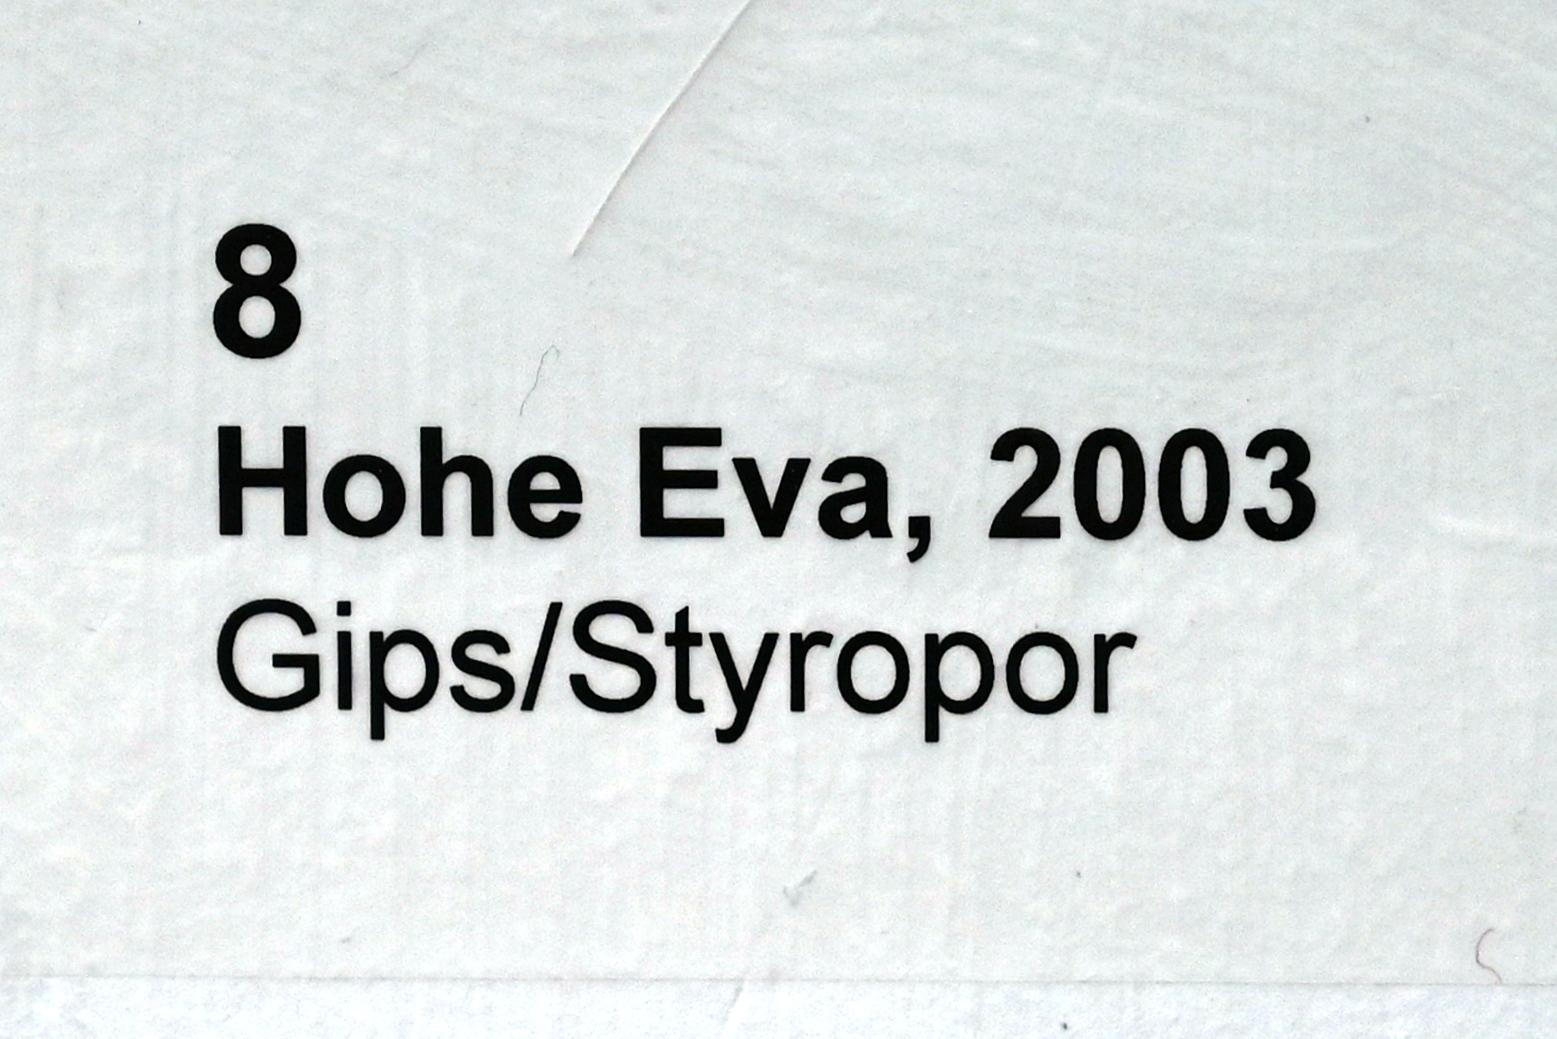 Lothar Fischer (1959–2004), Hohe Eva, Neumarkt in der Oberpfalz, Museum Lothar Fischer, Obergeschoß Raum 4, 2003, Bild 4/4